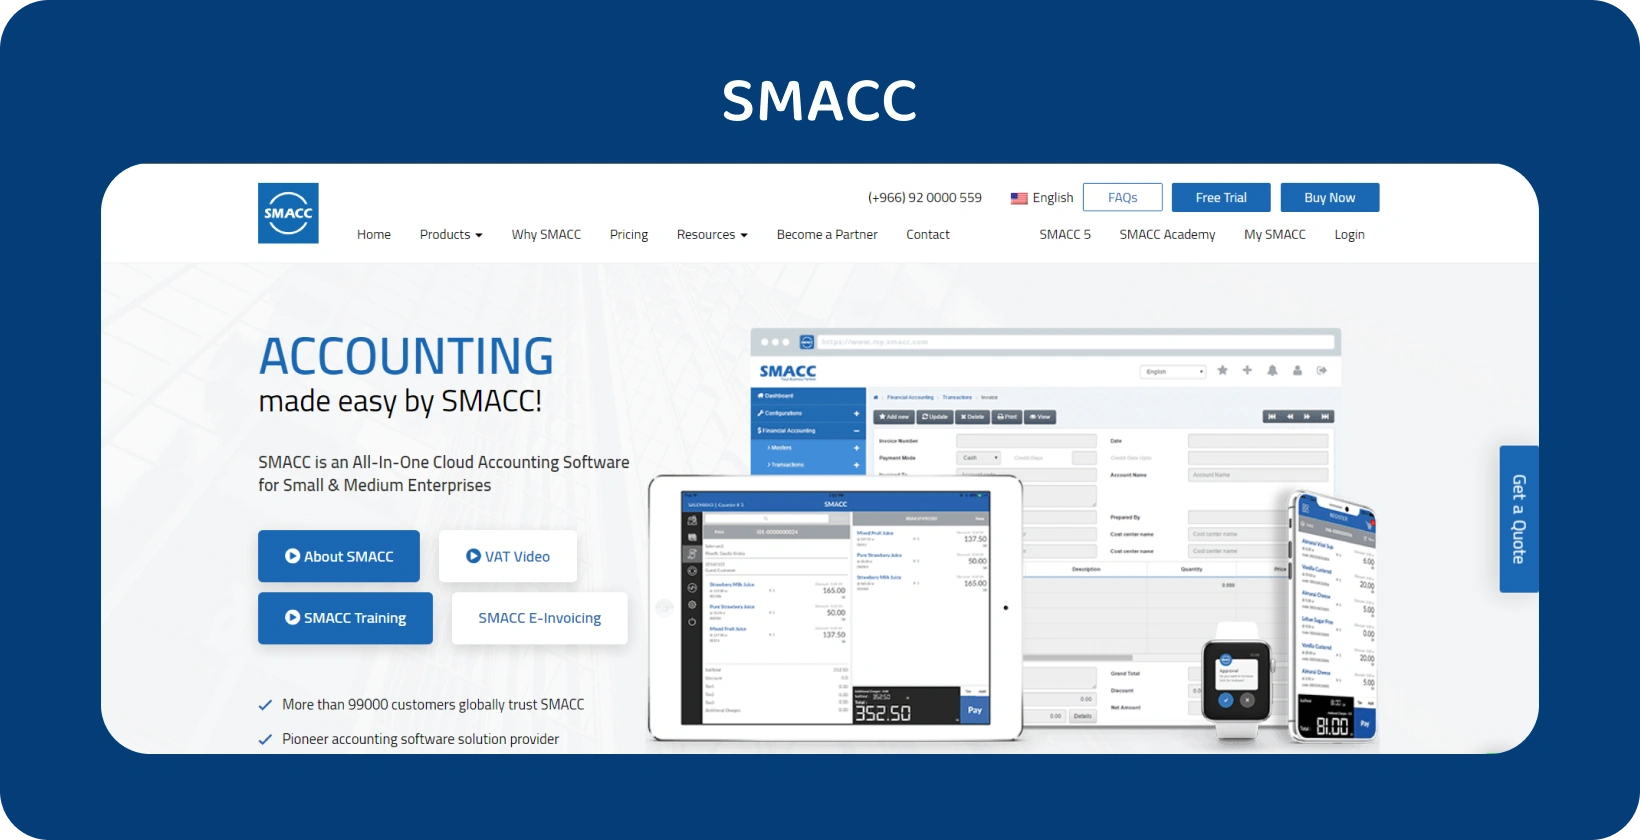 Программное обеспечение SMACC Cloud Accounting, отображаемое на различных устройствах, улучшает управление финансами для малых и средних предприятий.